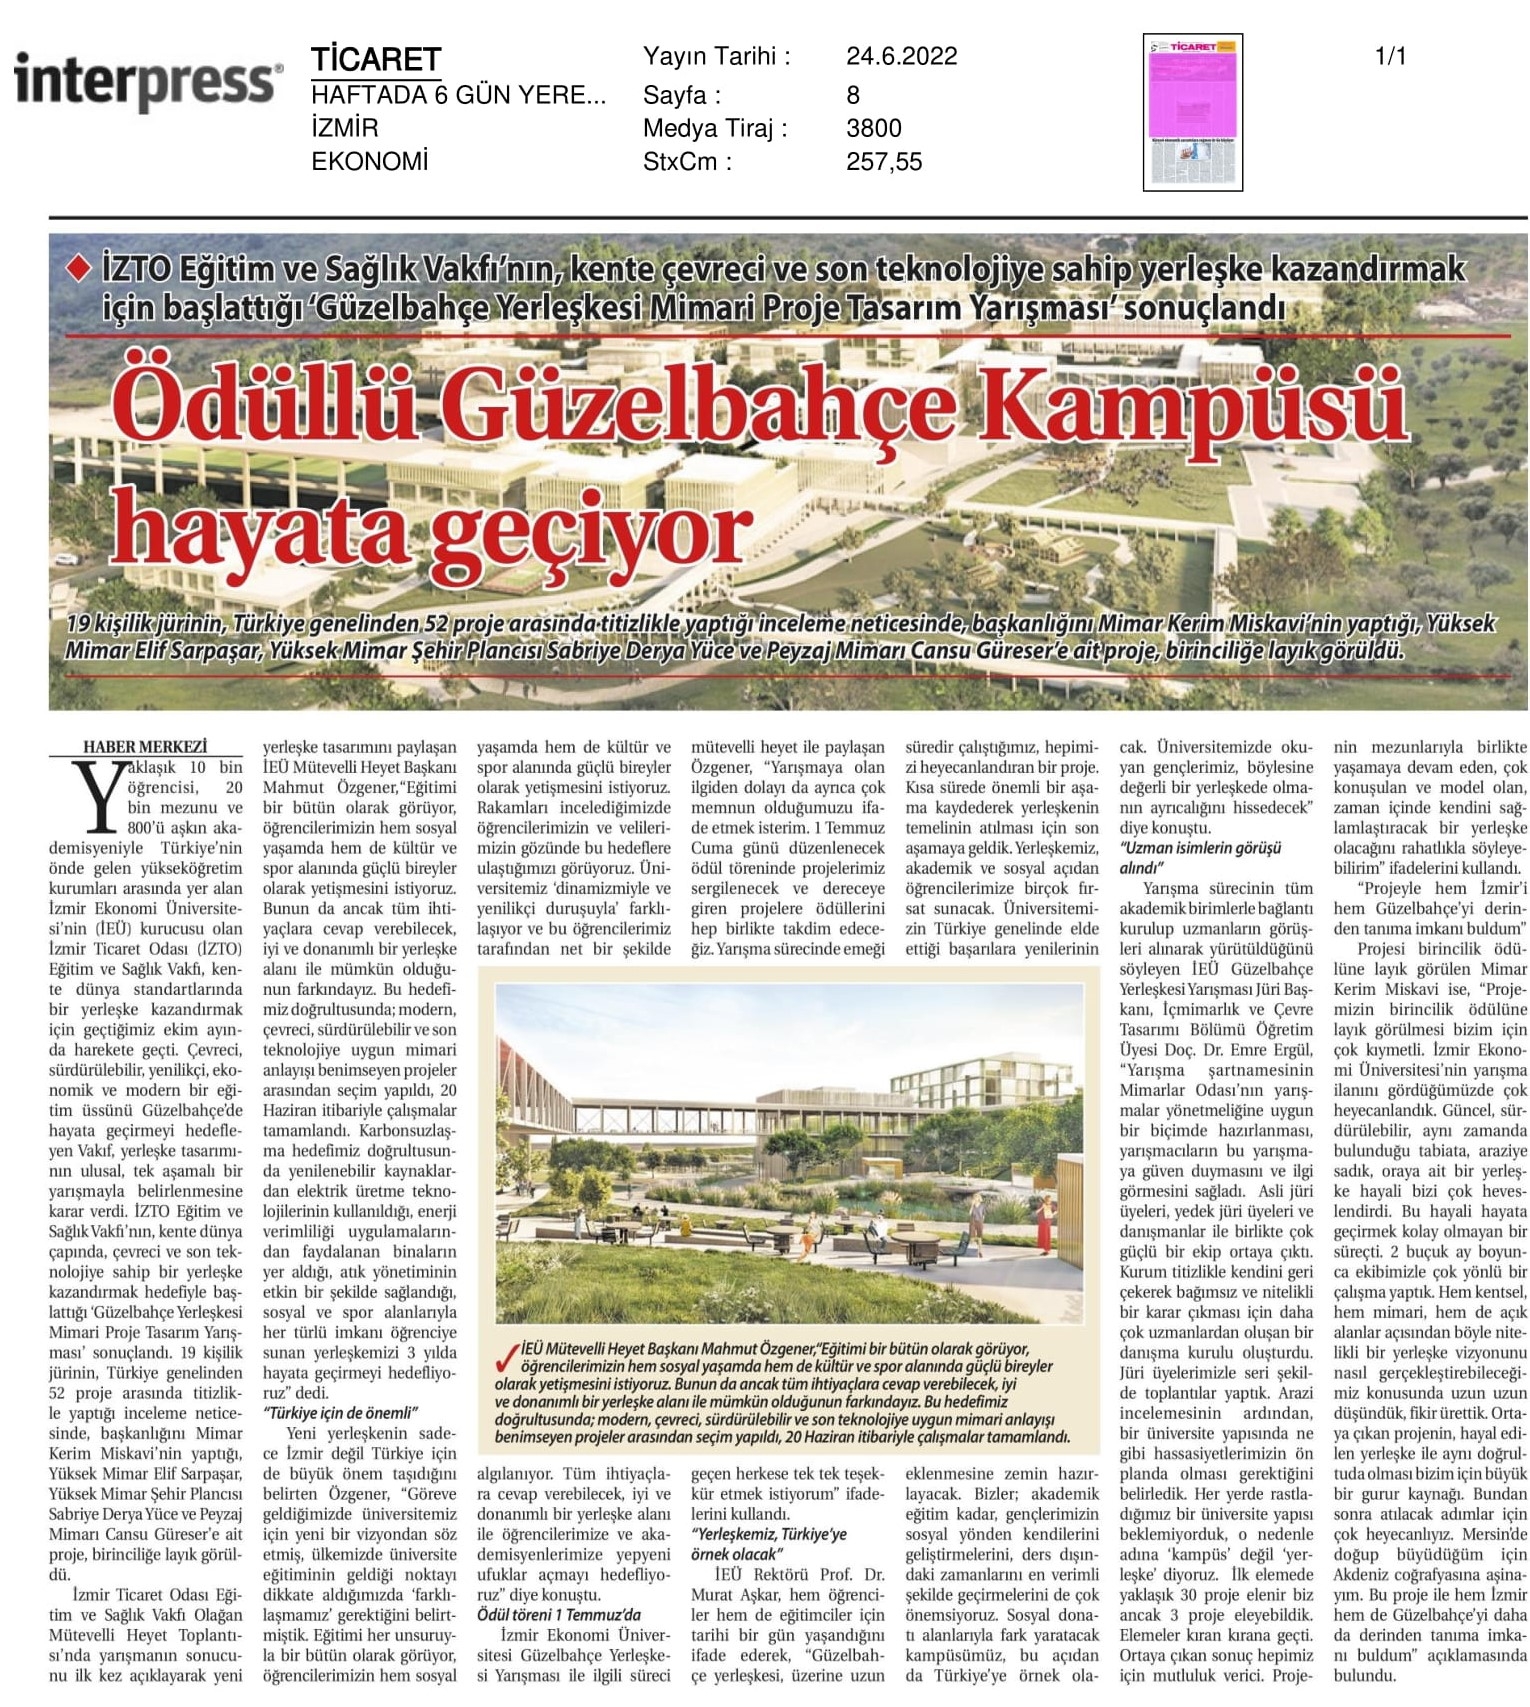 İzmir'in geleceğe açılan kapısı: ‘Güzelbahçe kampüsü’